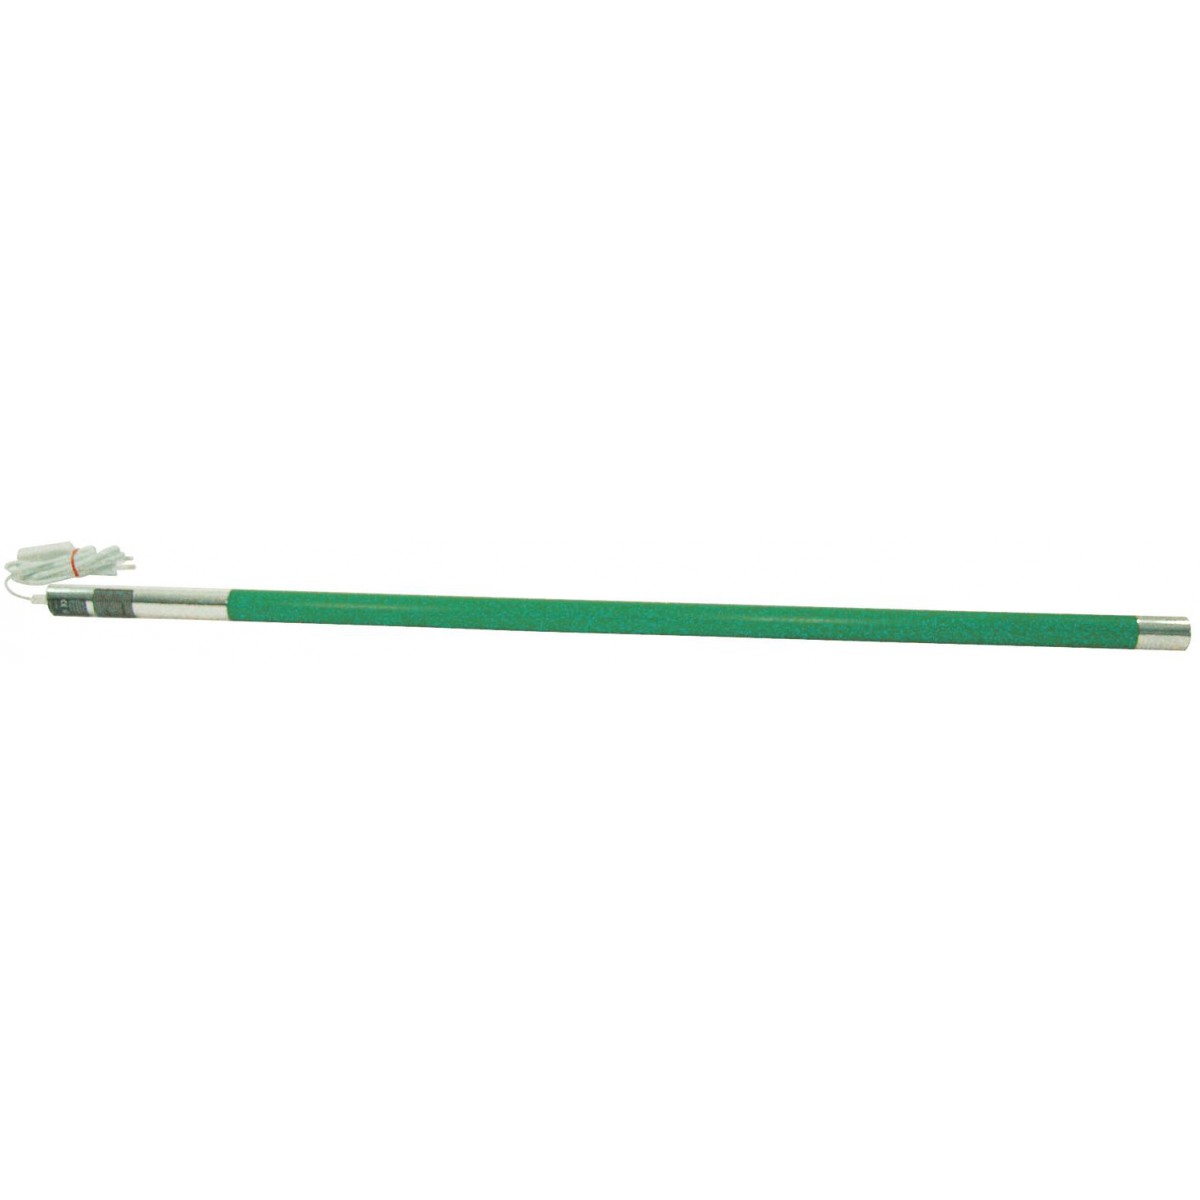 Neonová zářivka 105cm, 21W, zelená